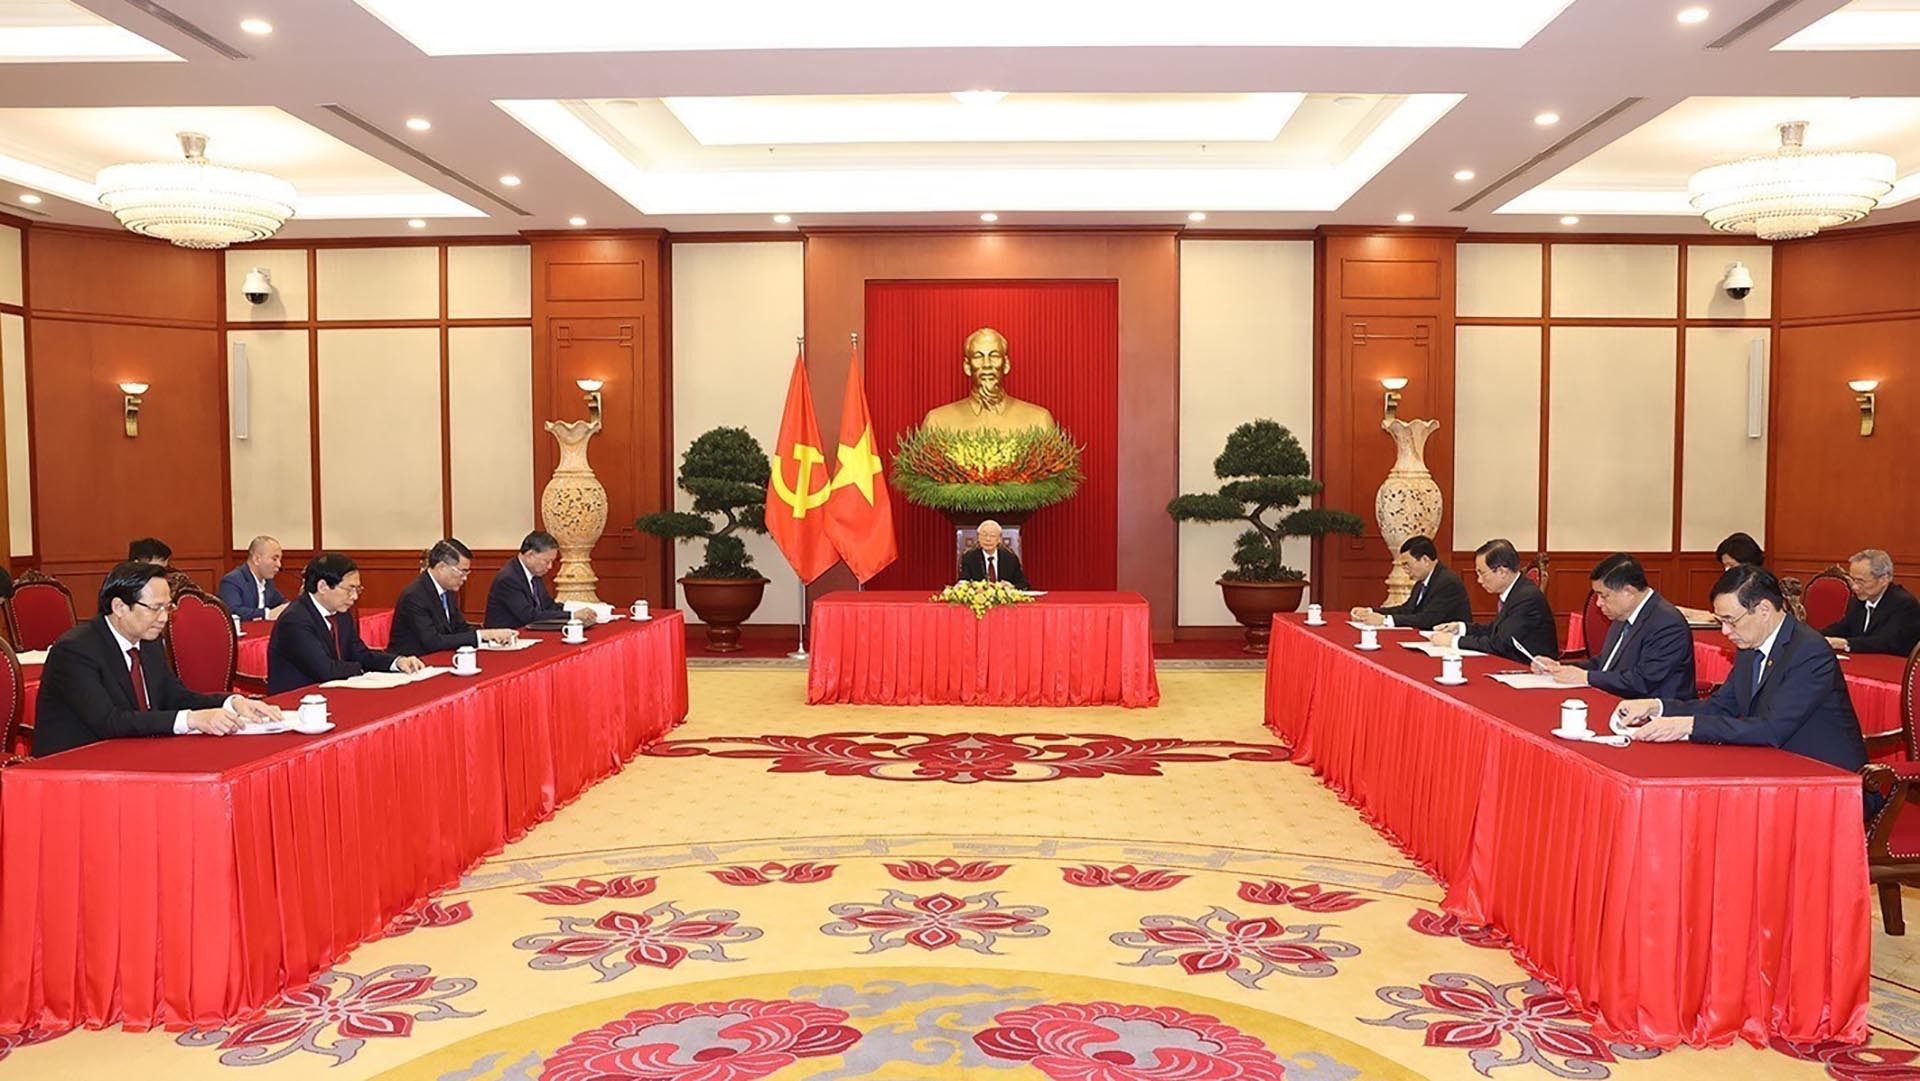 Tổng Bí thư Nguyễn Phú Trọng điện đàm với Thủ tướng Đức Olaf Scholz